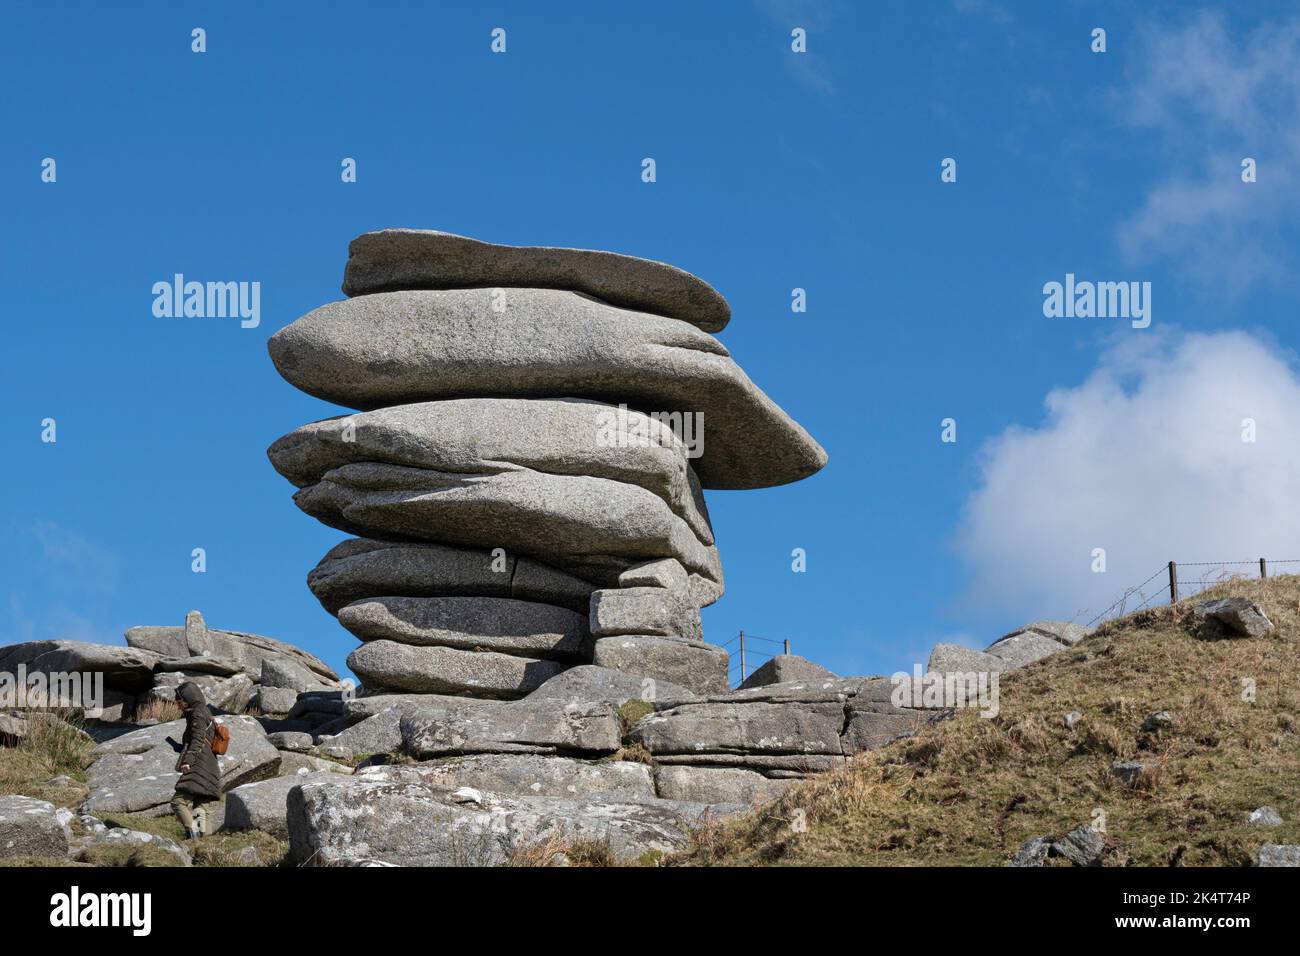 Le Cheesewring une immense pile de roches de granit formée par l'action glaciaire sur le sommet de Stowe Hill sur Bodmin Moor en Cornouailles. Banque D'Images